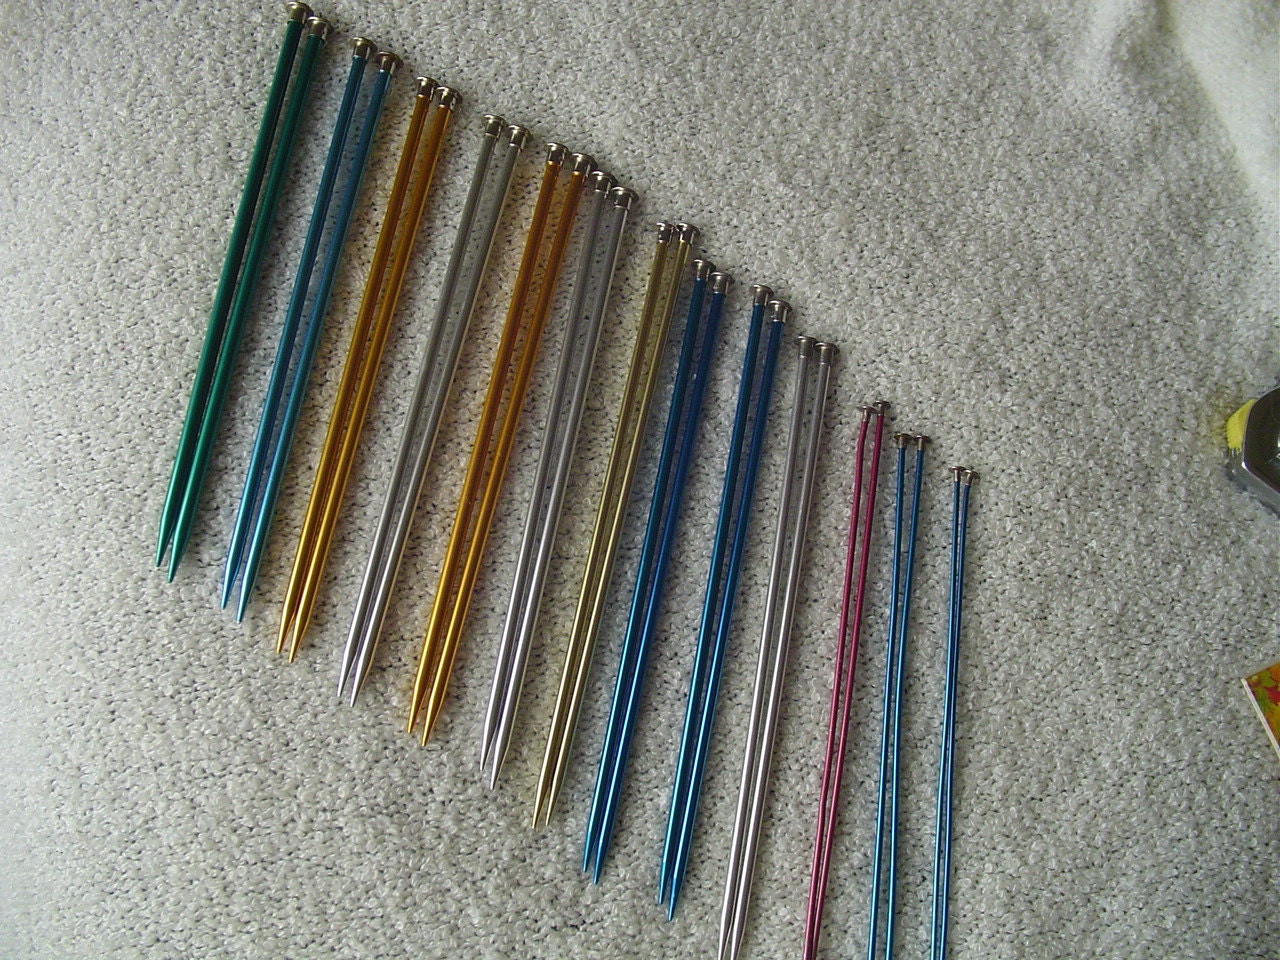 Destash Boye Knitting Needles 5 10 Aluminum Knitting